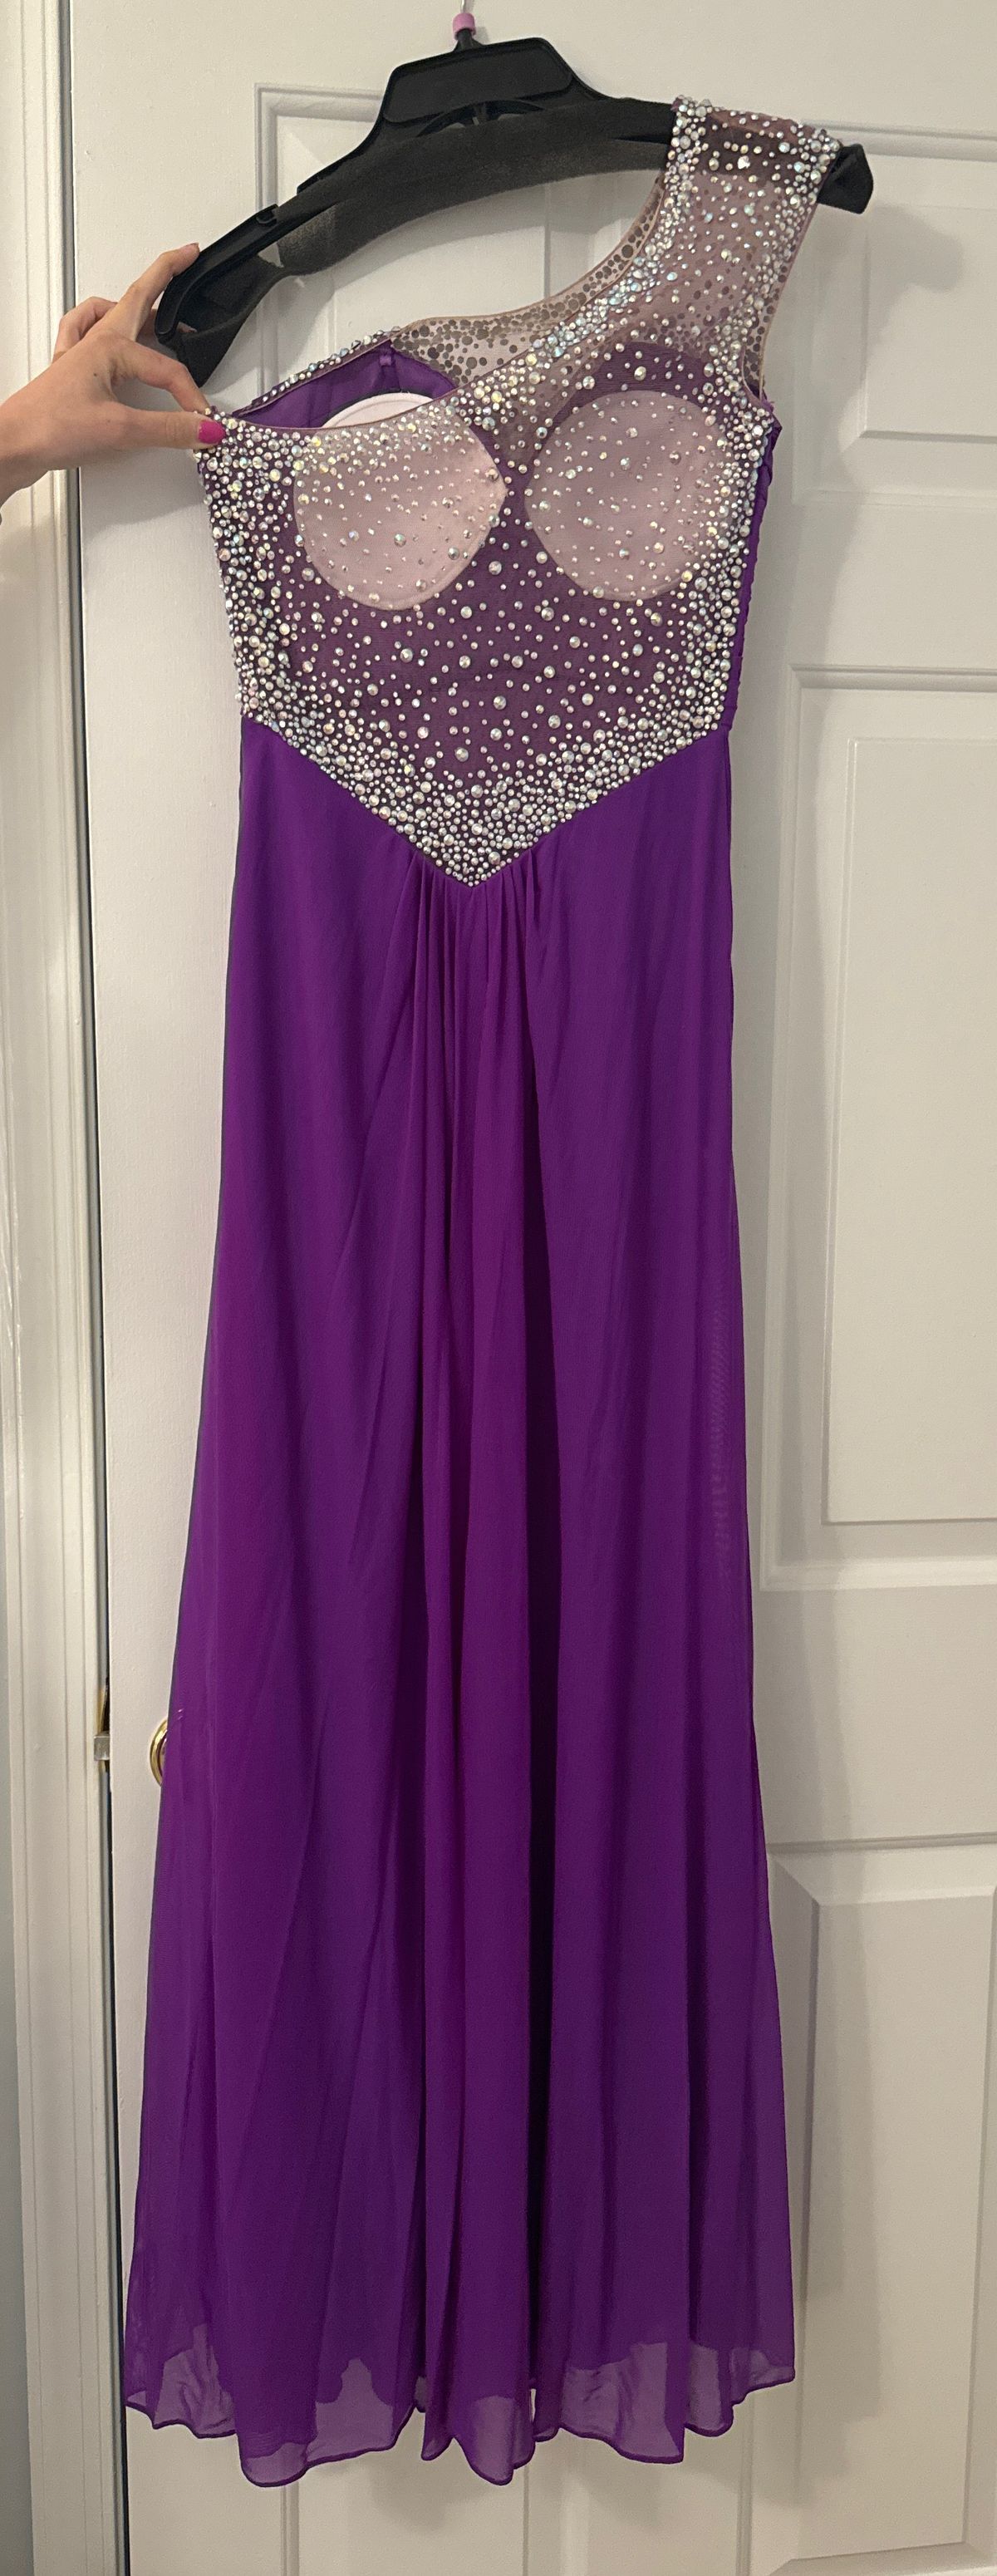 La Femme Size 2 Prom One Shoulder Purple Side Slit Dress on Queenly